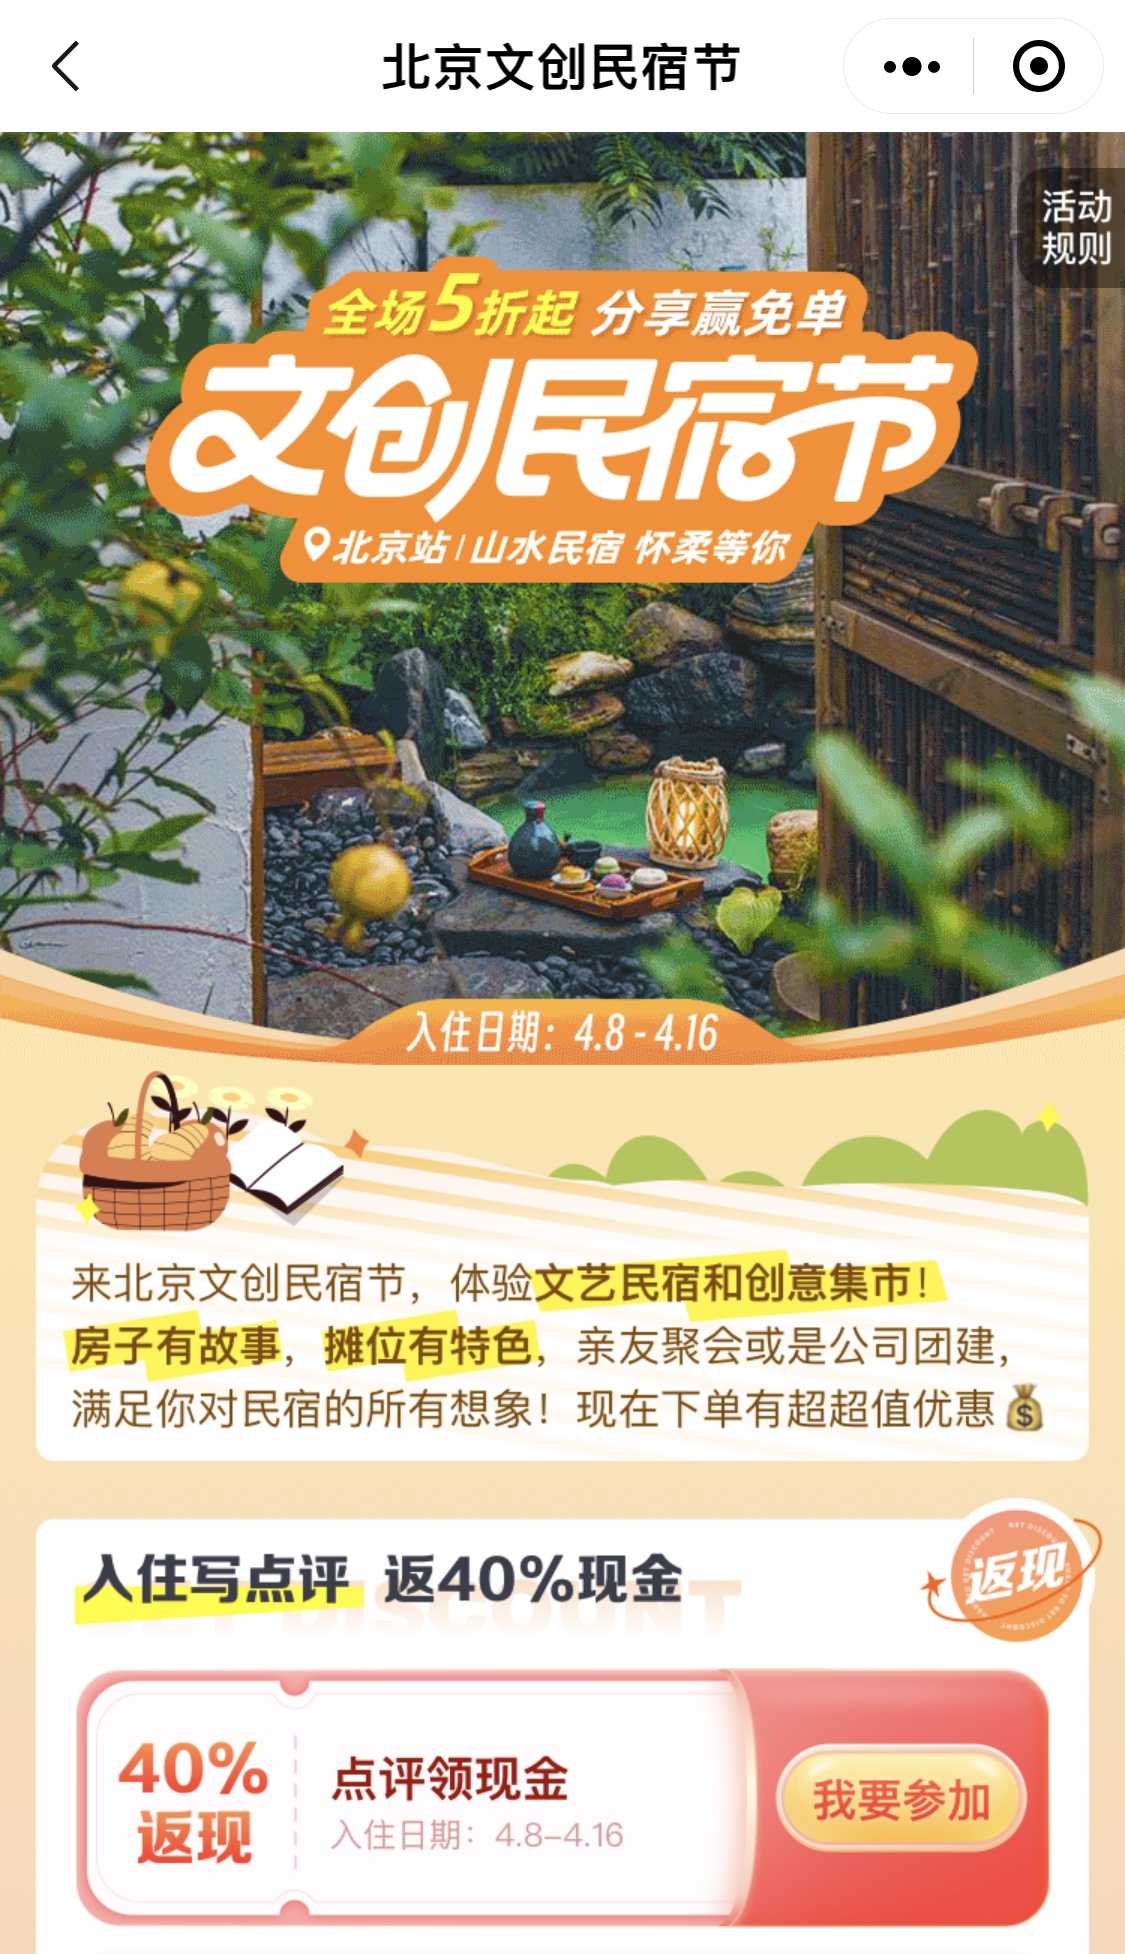 双十一酒店民宿节日营销实景手机海报_图片模板素材-稿定设计